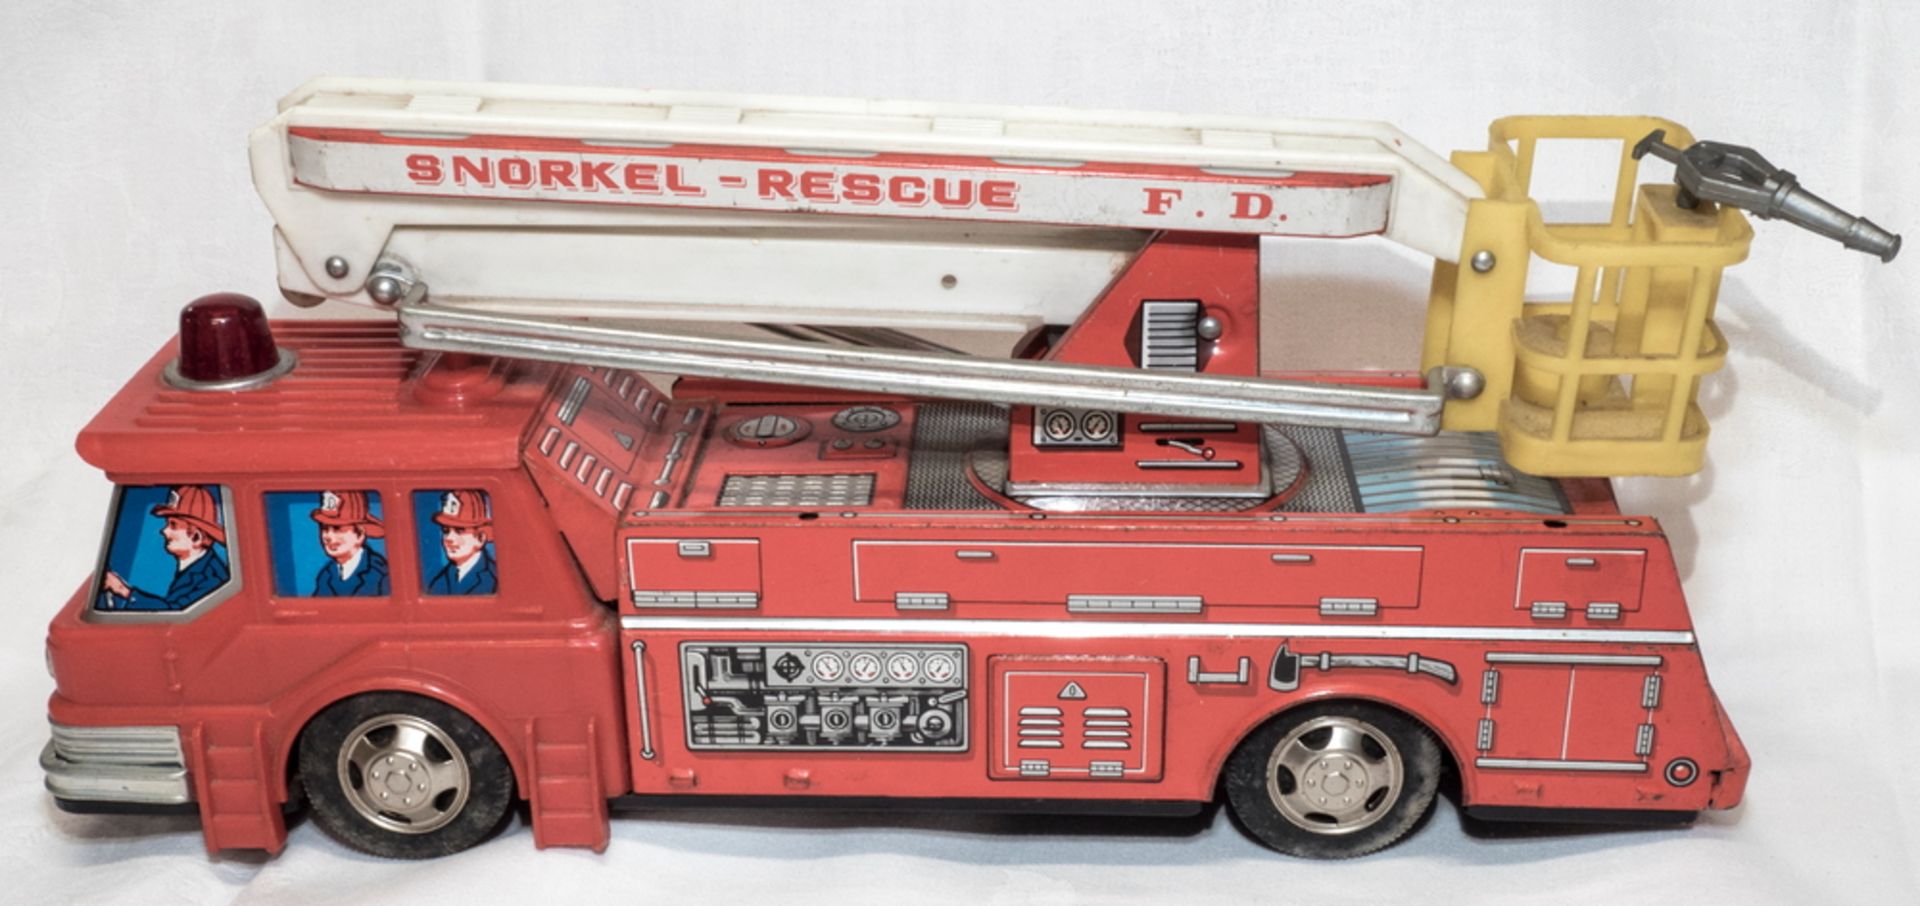 Junior Toys Snorkel Rescue Feuerwehr Truck, Blech lithografiert. Made in Japan. Batteriebetrieben. - Bild 3 aus 5